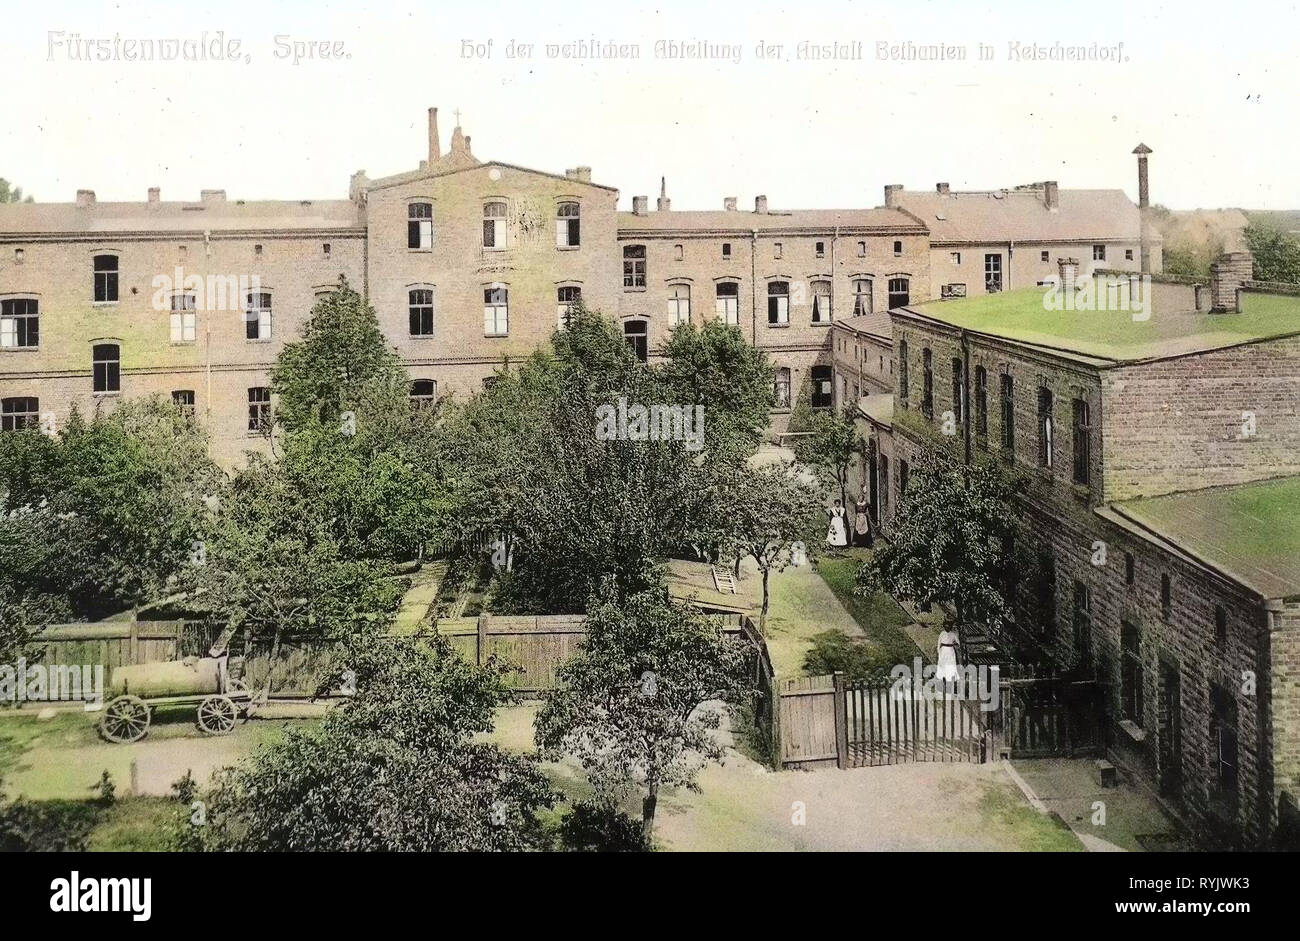 Ospedali nel Land di Brandeburgo, edifici in Fürstenwalde/Spree, 1911, Brandeburgo, Fürstenwalde, Hof der weiblichen Abteilung der Anstalt Bethanien Foto Stock